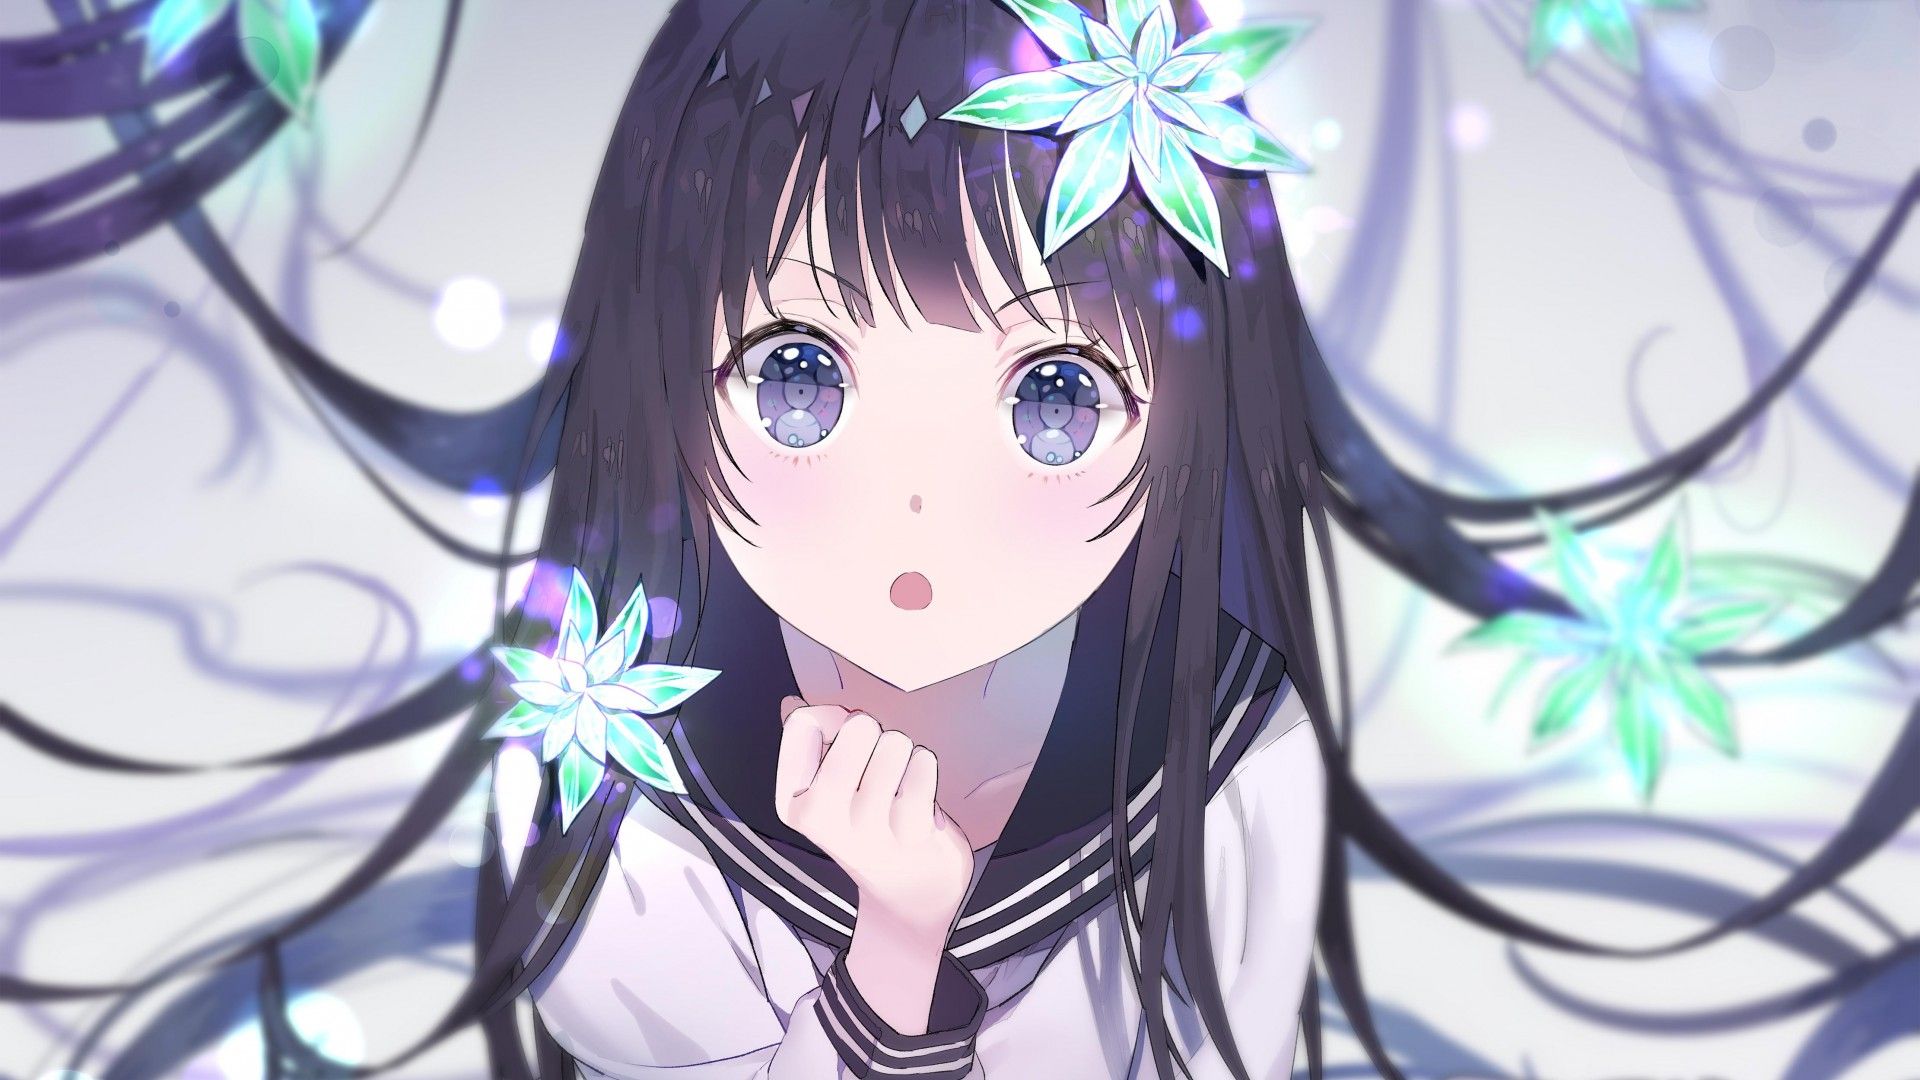 Cute Anime girl 4K HD desktop wallpaper, Widescreen, High